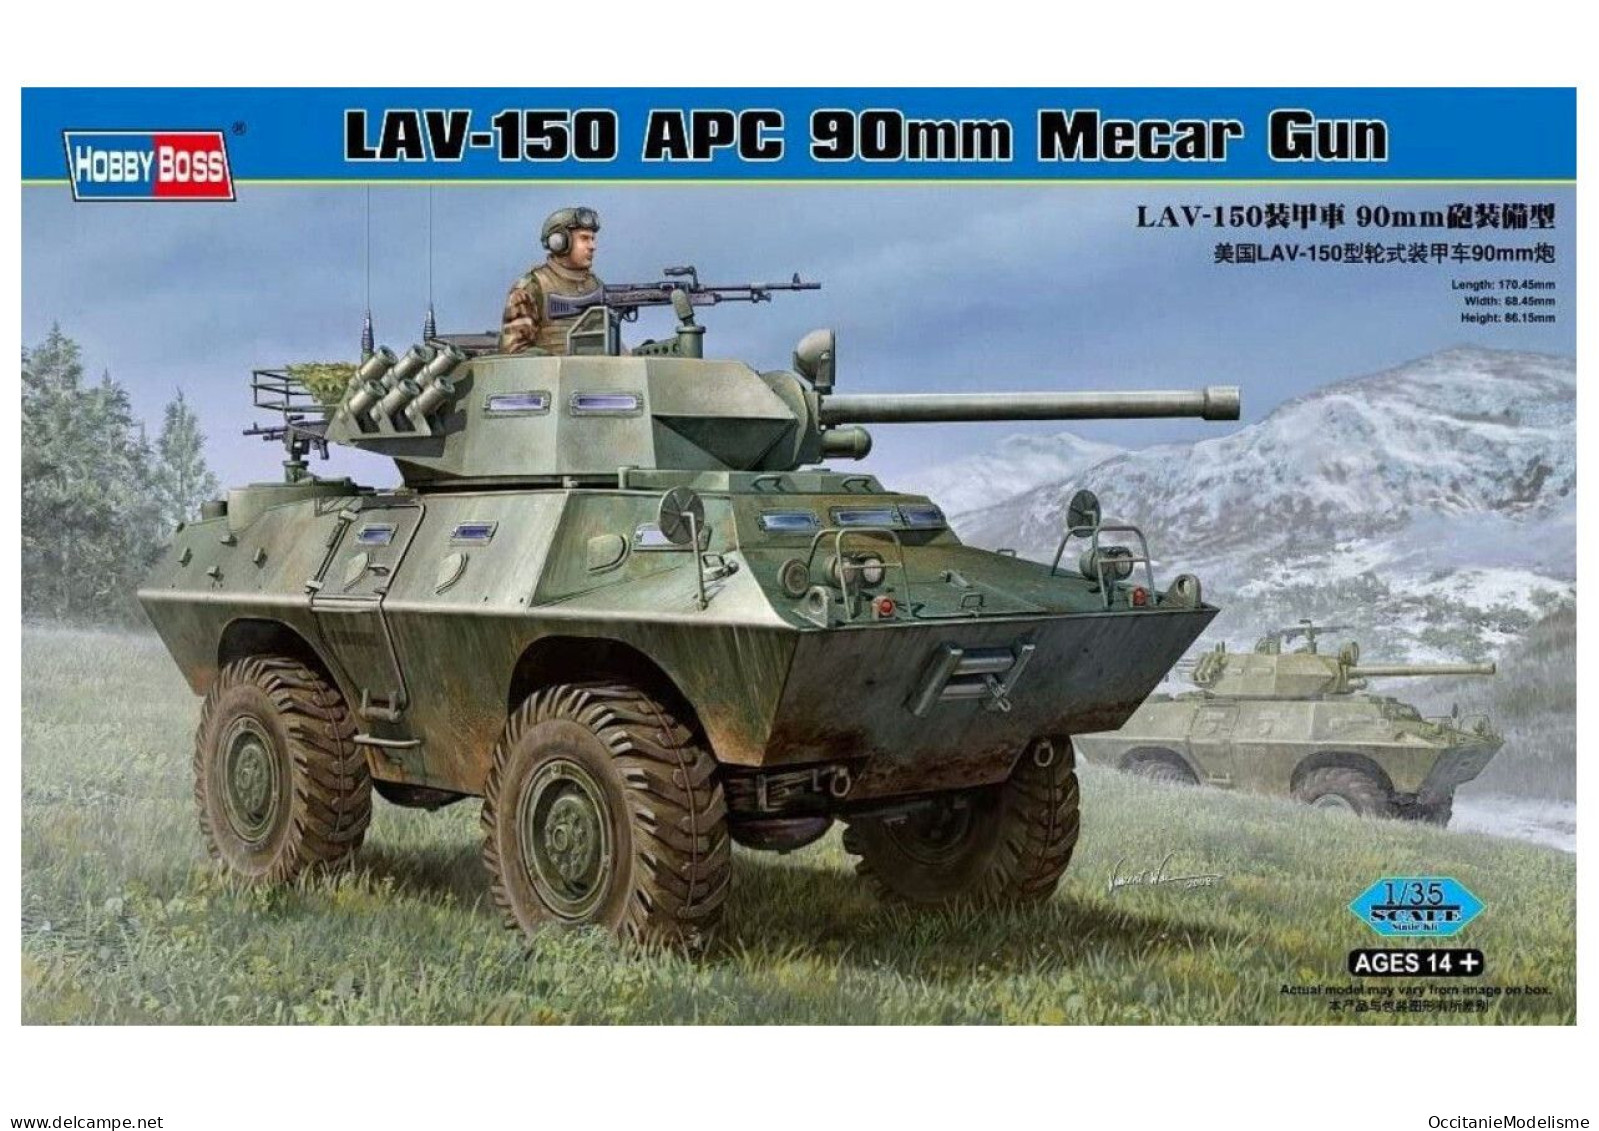 HobbyBoss - LAV-150 APC 90mm Mecar Gun Maquette Kit Plastique Réf. 82421 Neuf NBO 1/35 - Military Vehicles